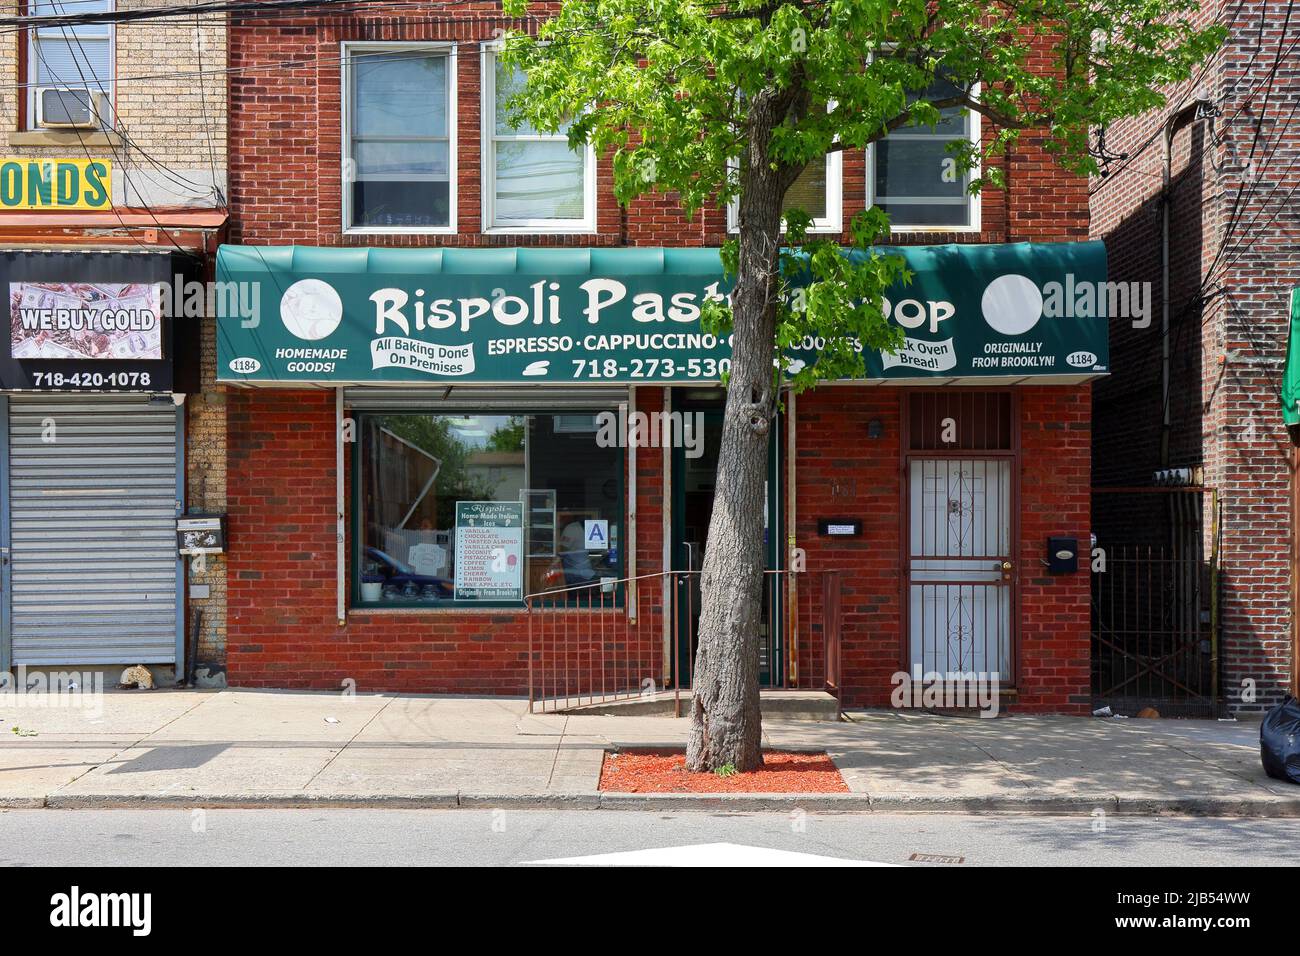 Boutique de pâtisseries Rispoli, 1184 Bay St, Staten Island, New York photo d'une pâtisserie italienne dans le quartier de Rosebank. Banque D'Images